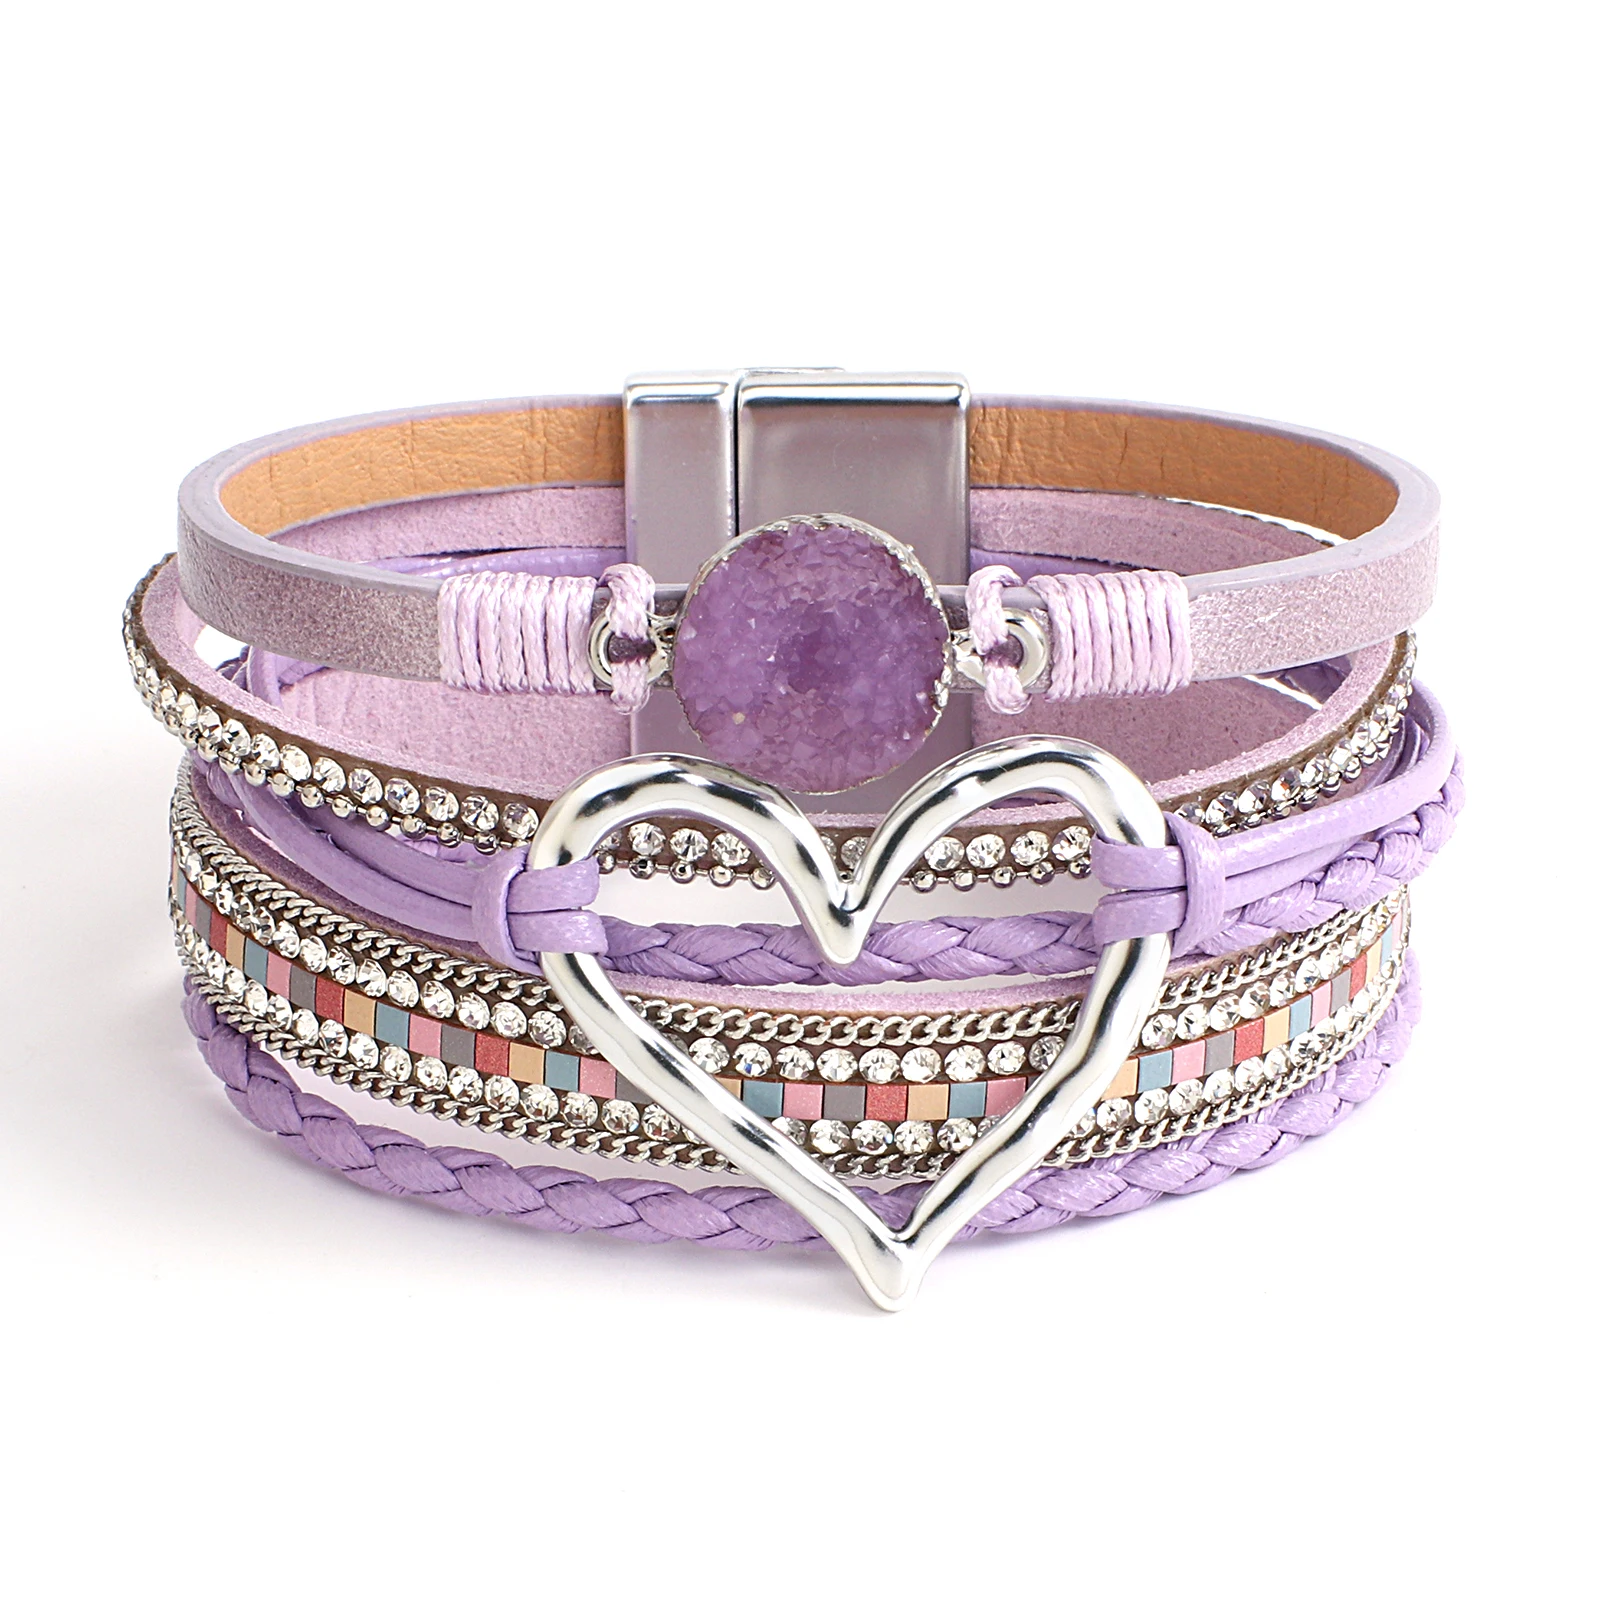 ALLYES-pulsera de cuero púrpura elegante para mujer, brazalete bohemio con cuentas de cristal de resina, brazalete con forma de corazón, regalos de joyería